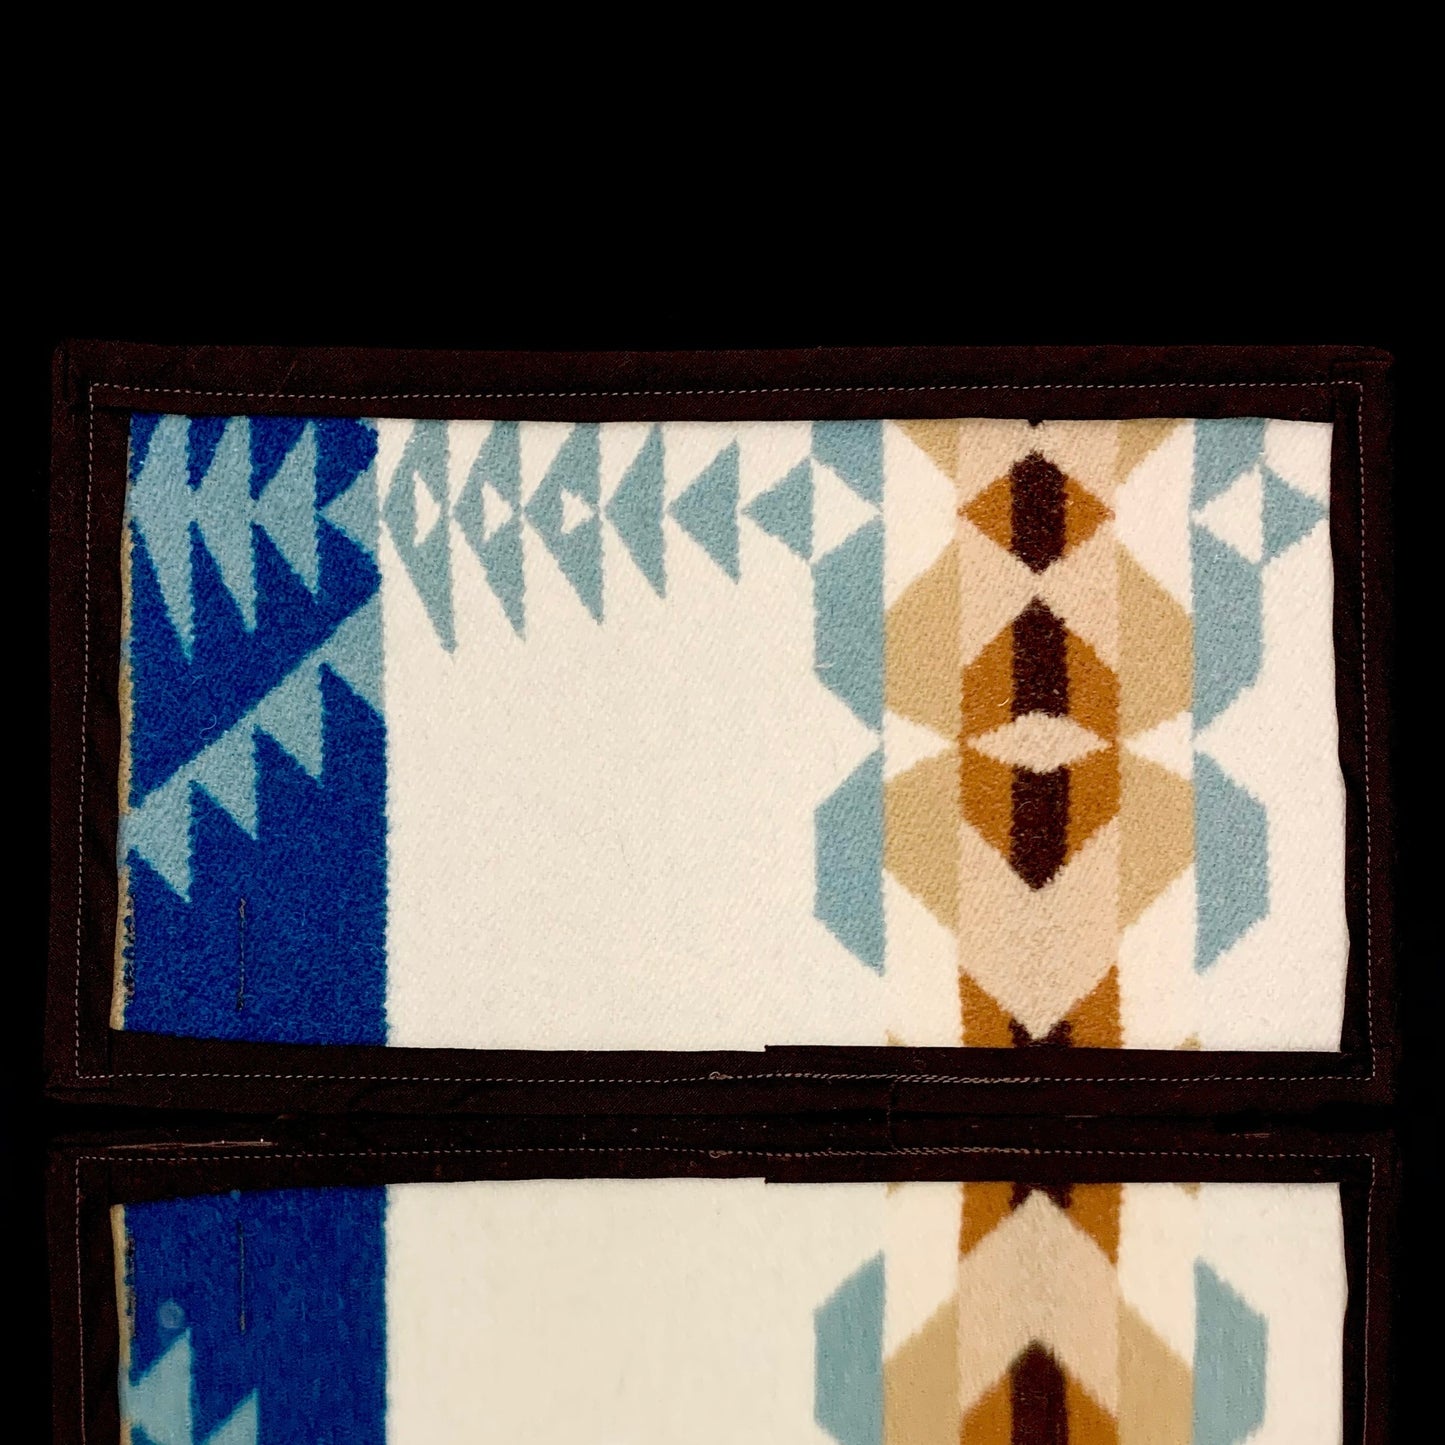 9.5” x 5.5” Pendleton mat by Wook Wear